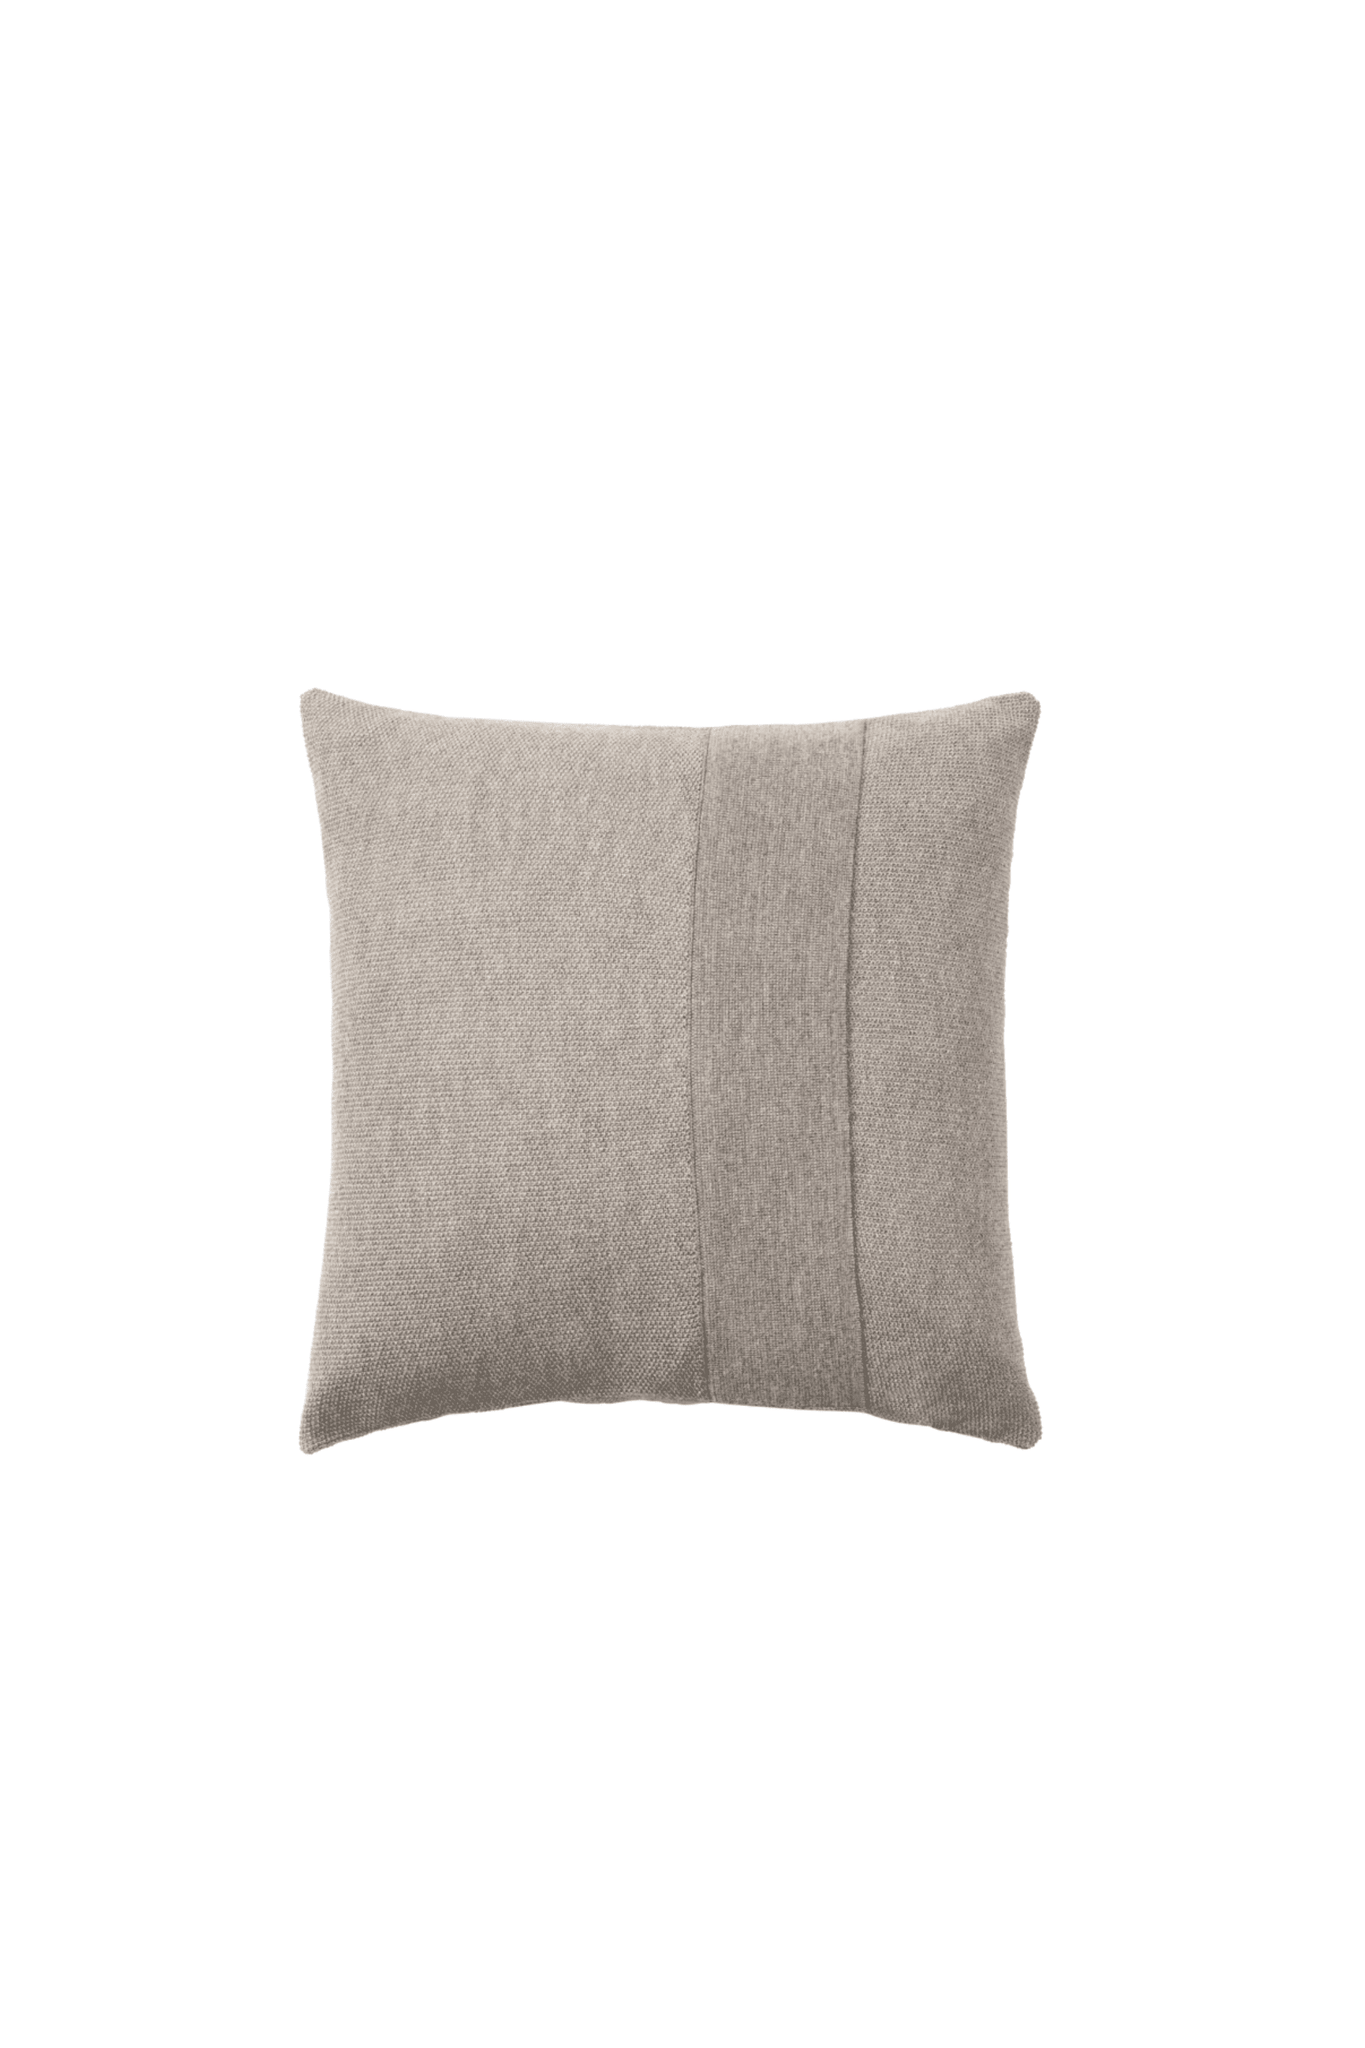 Layer Cushion - Sand Grey